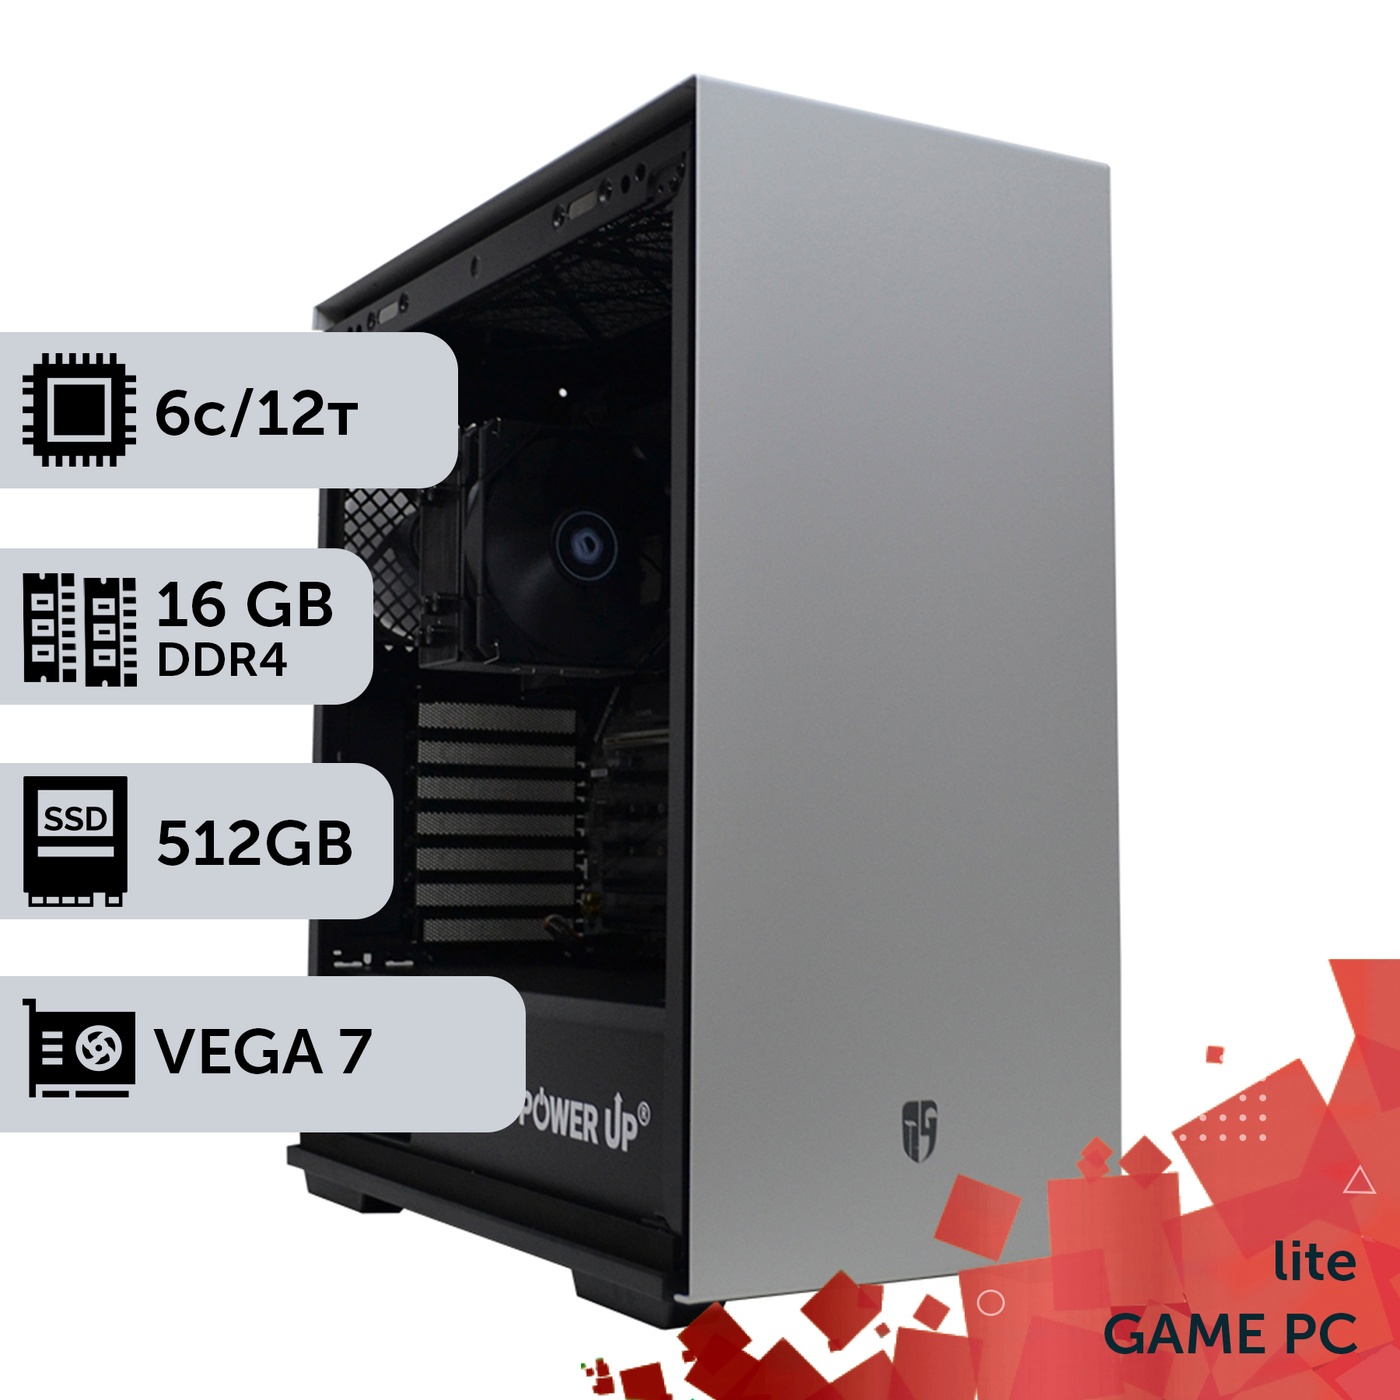 Ігровий комп'ютер GamePC Lite #150 Ryzen 7 5700G/16 GB/SSD 512GB/Int Video